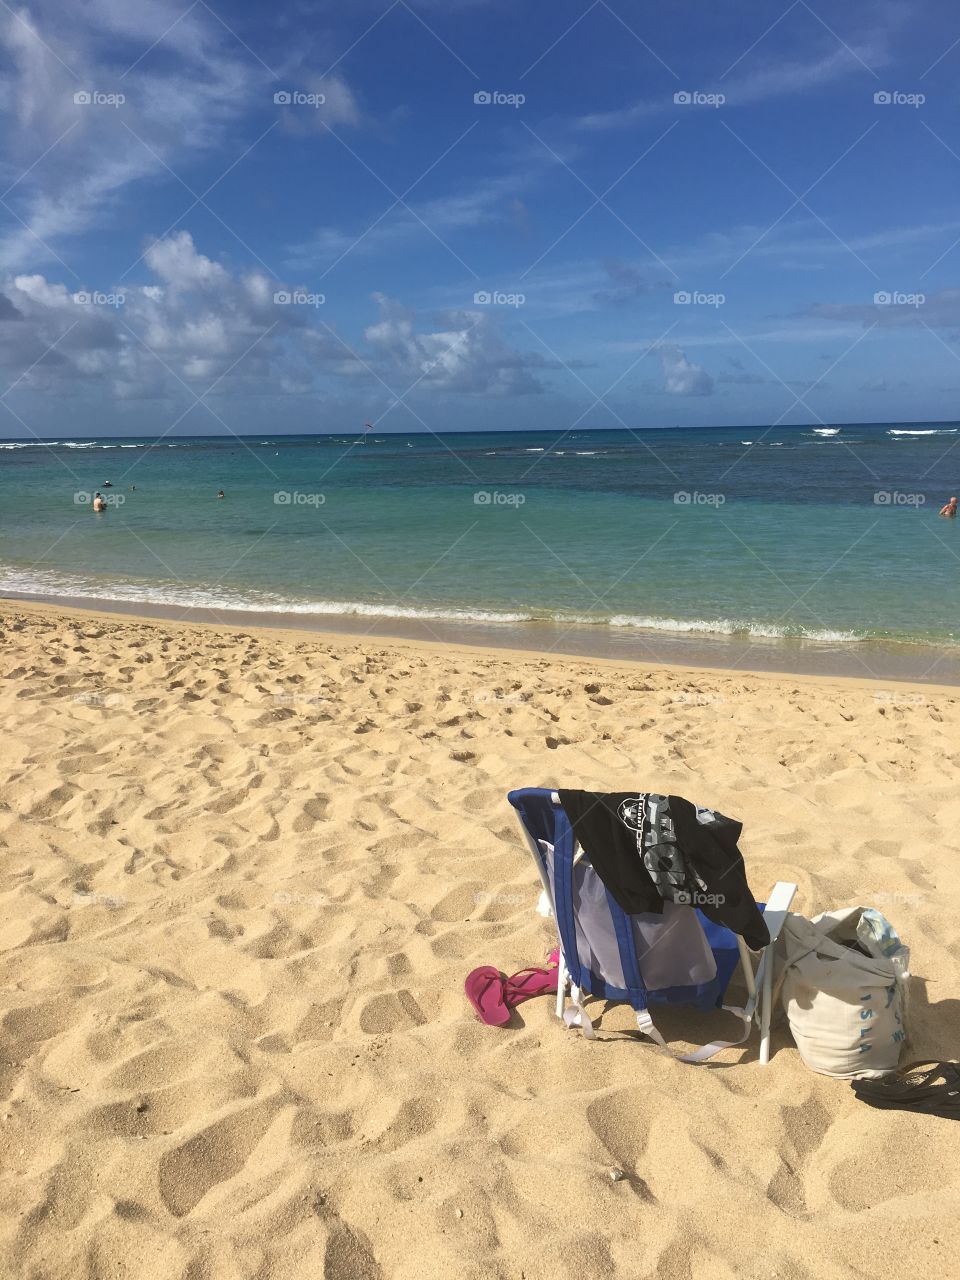 At the beach with beach chair